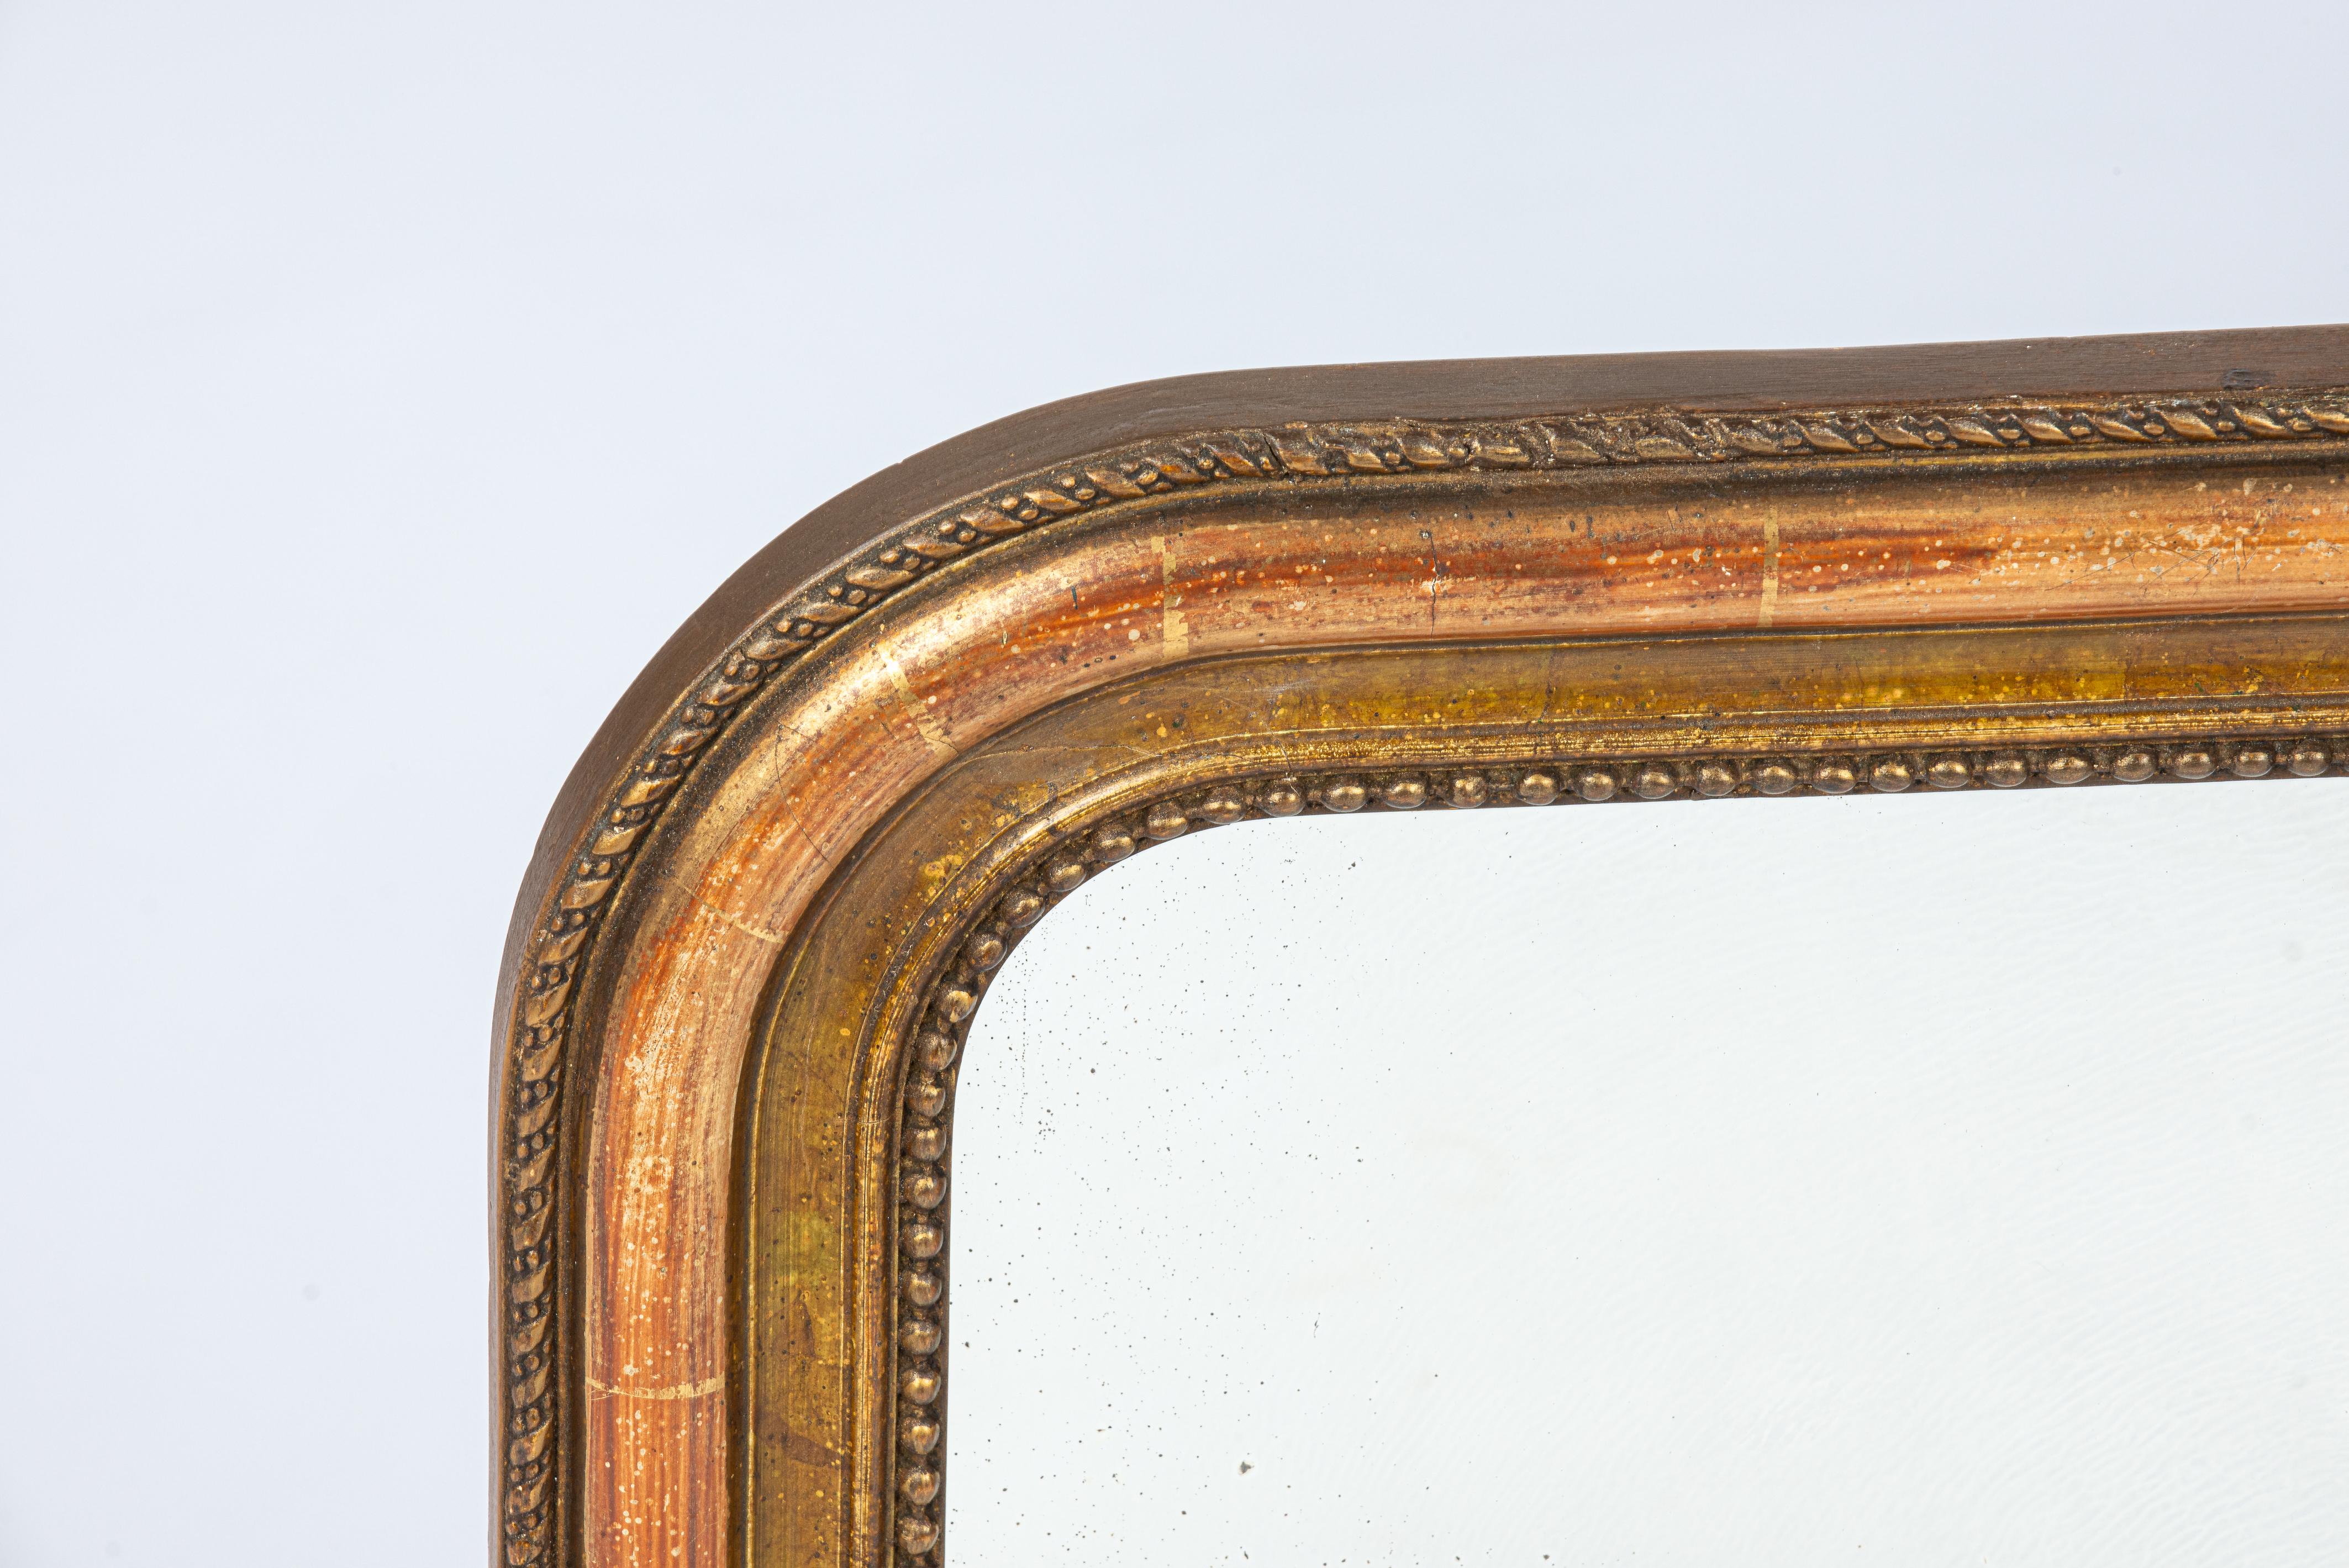 Nous vous proposons ici un magnifique petit miroir ancien qui a été fabriqué en France dans la seconde moitié du XIXe siècle, vers 1880. Le cadre du miroir présente les angles supérieurs arrondis typiques des miroirs Louis Philippe. Un délicat